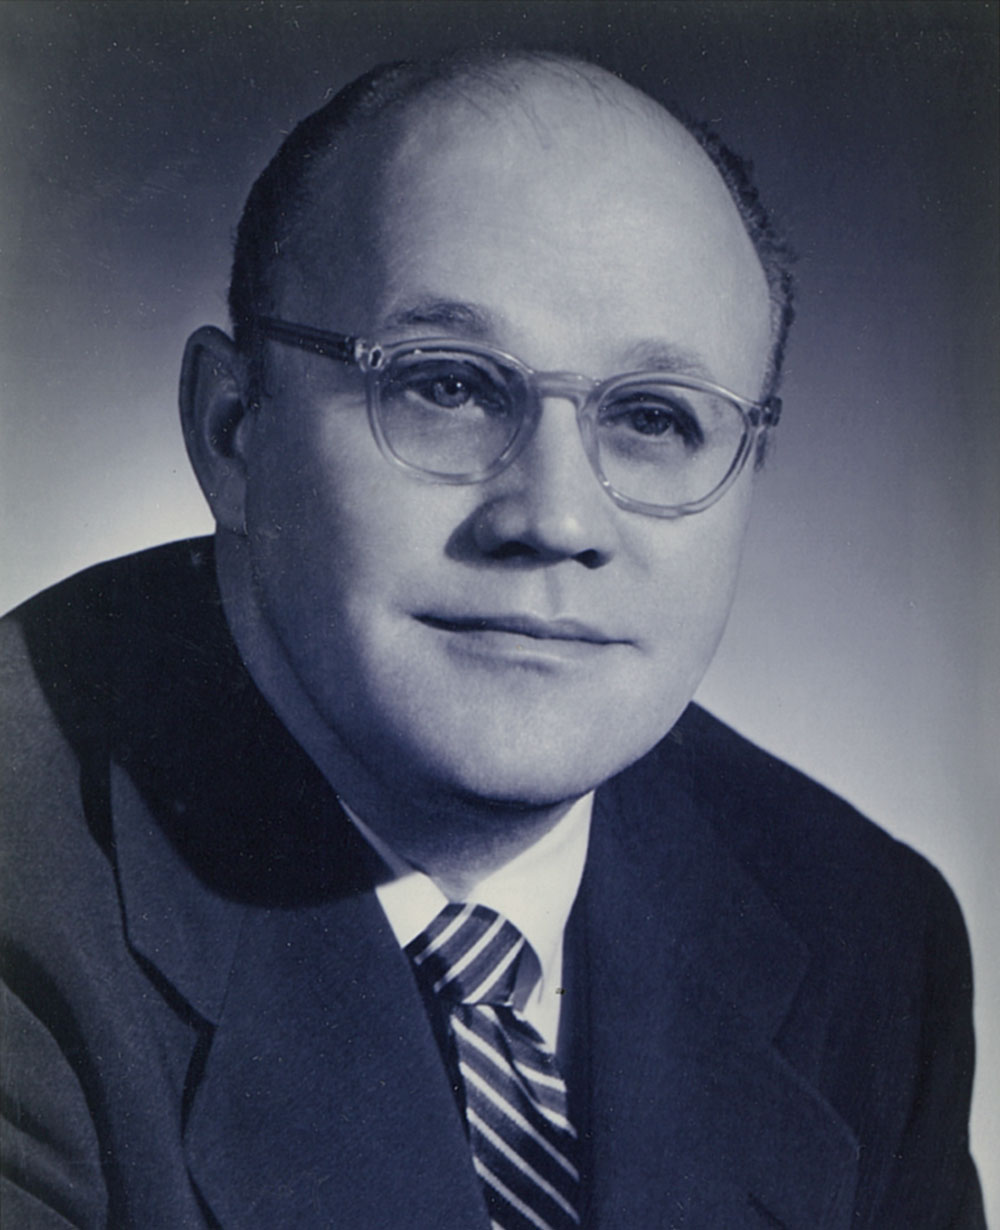 Kenneth W. Haagensen, PRSA President of 1958